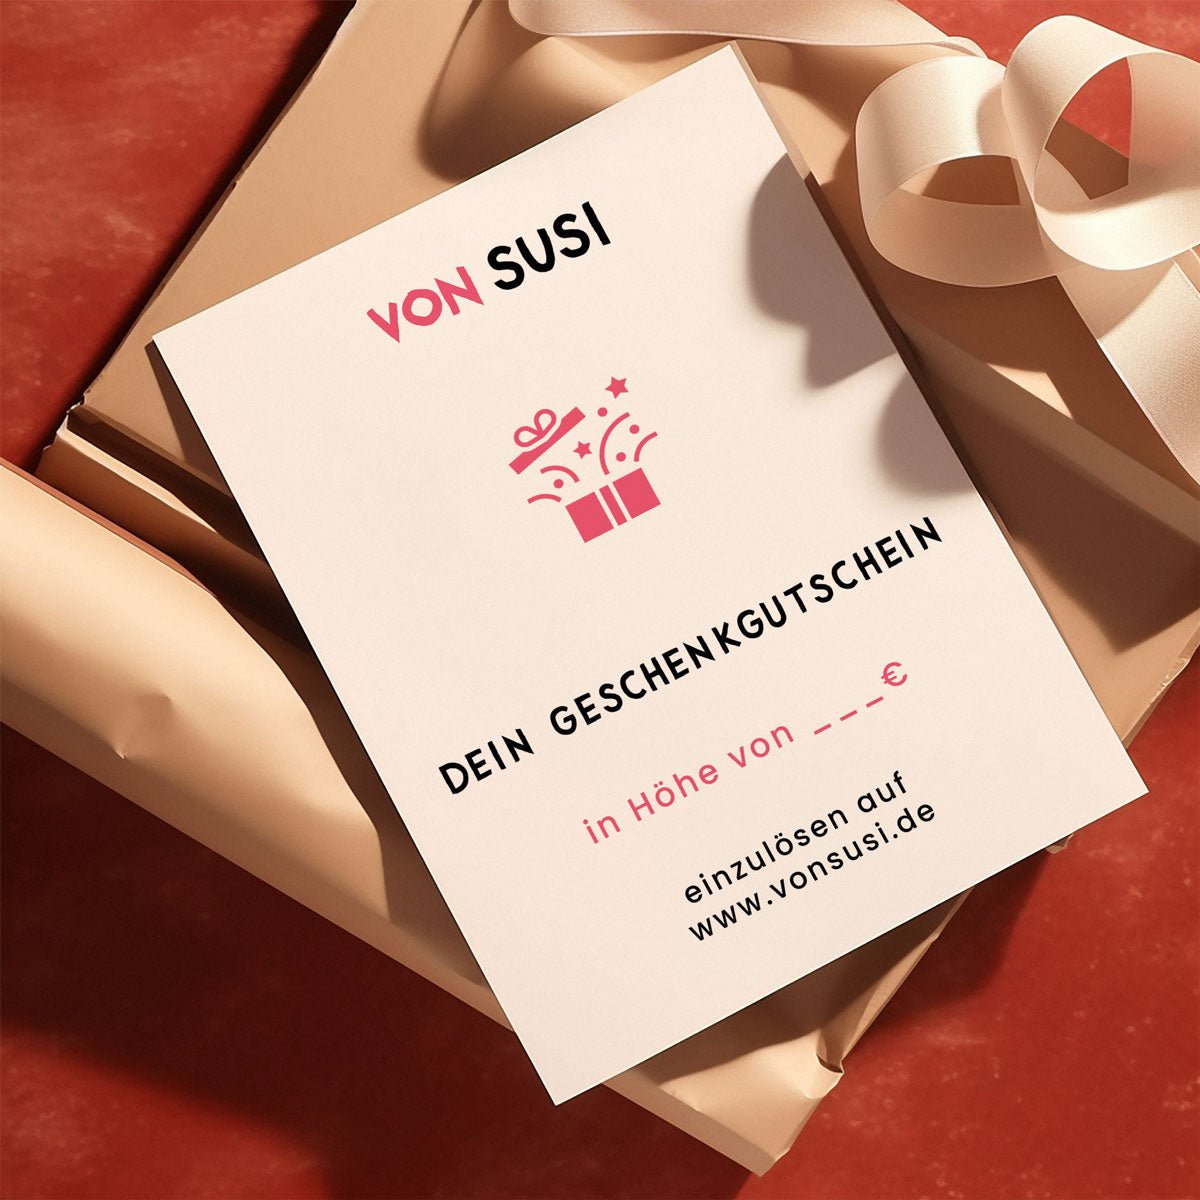 vonSUSI Geschenkgutschein per E - Mail • dein bayerisches Geschenk • Gutschein für Fine Art Poster Onlineshop - vonSUSI